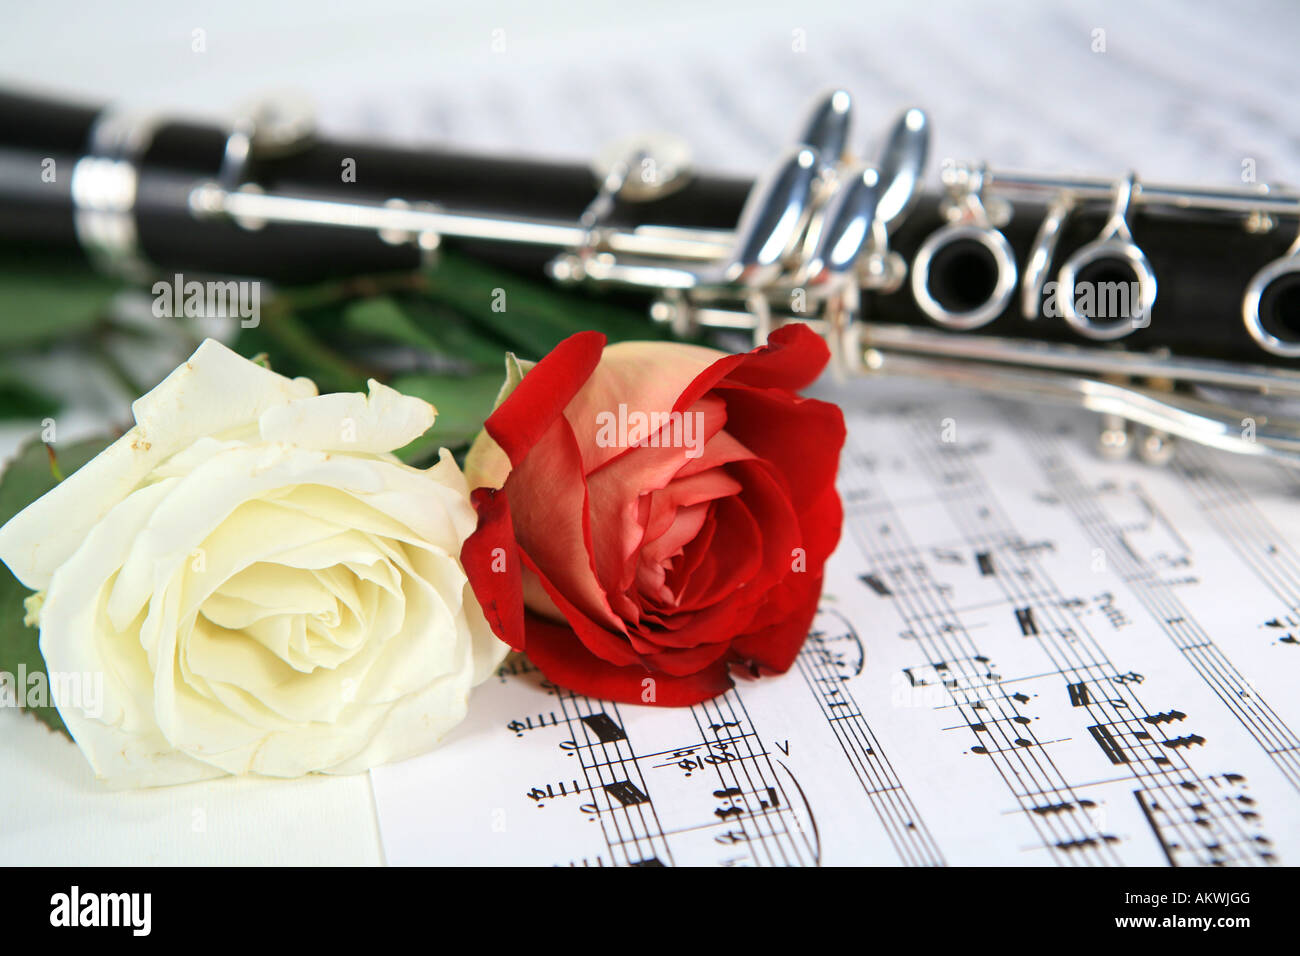 Eine rote und eine weiße Rose mit Klarinette zu den Noten Stockfotografie -  Alamy